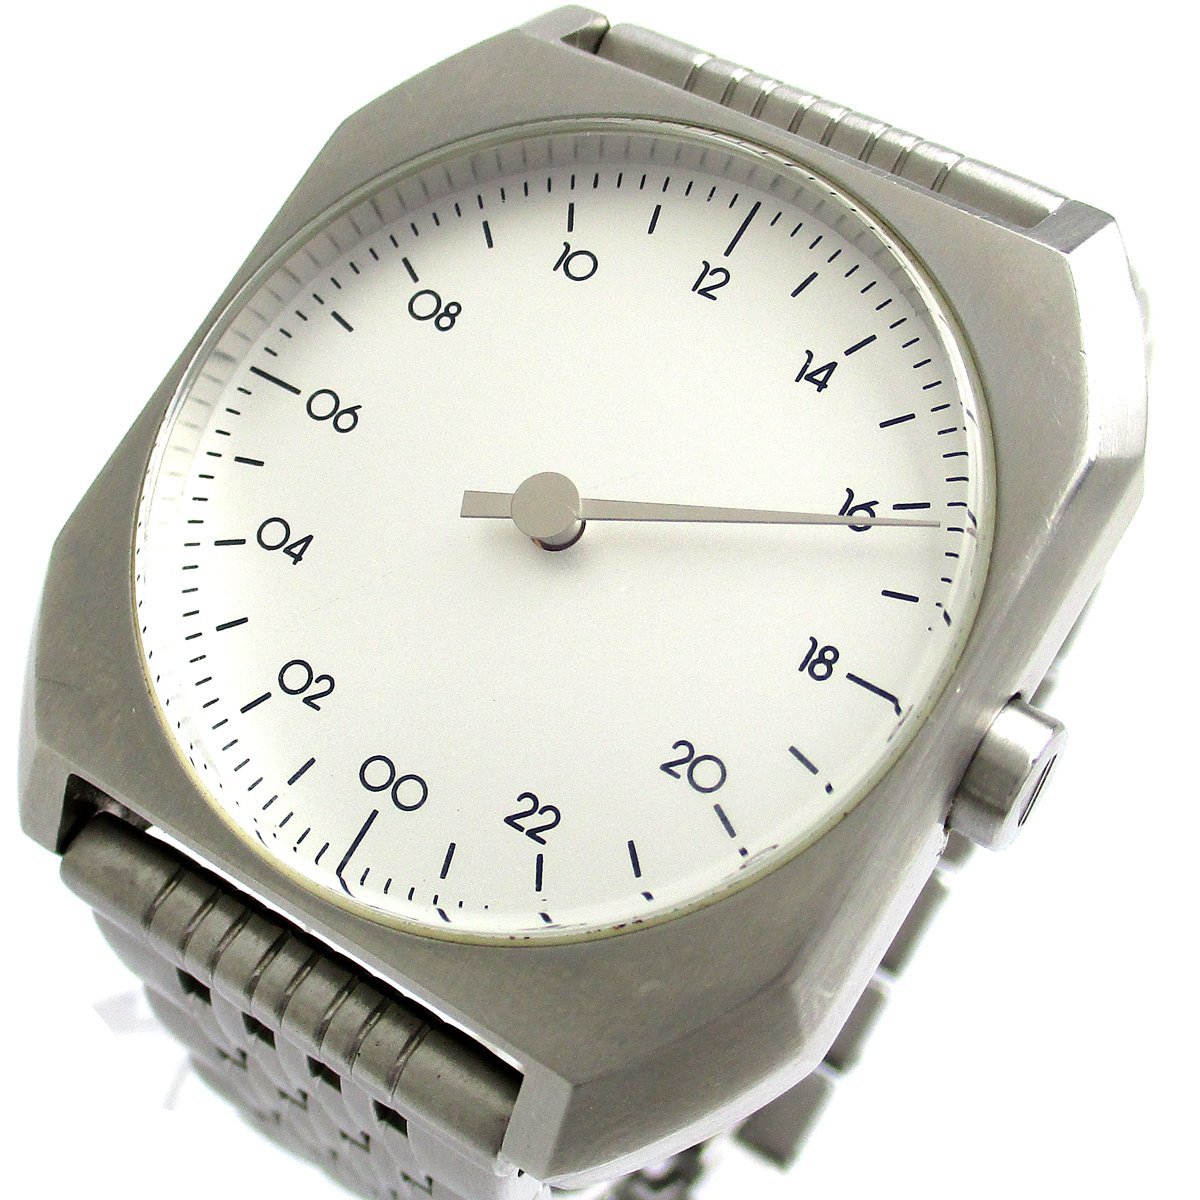 スローウォッチ Slow Watch 24時間腕時計 ボーイズ ユニセックス レディース メンズ シルバー文字盤 Mo 01 時計 婦人 クォーツ スイス製